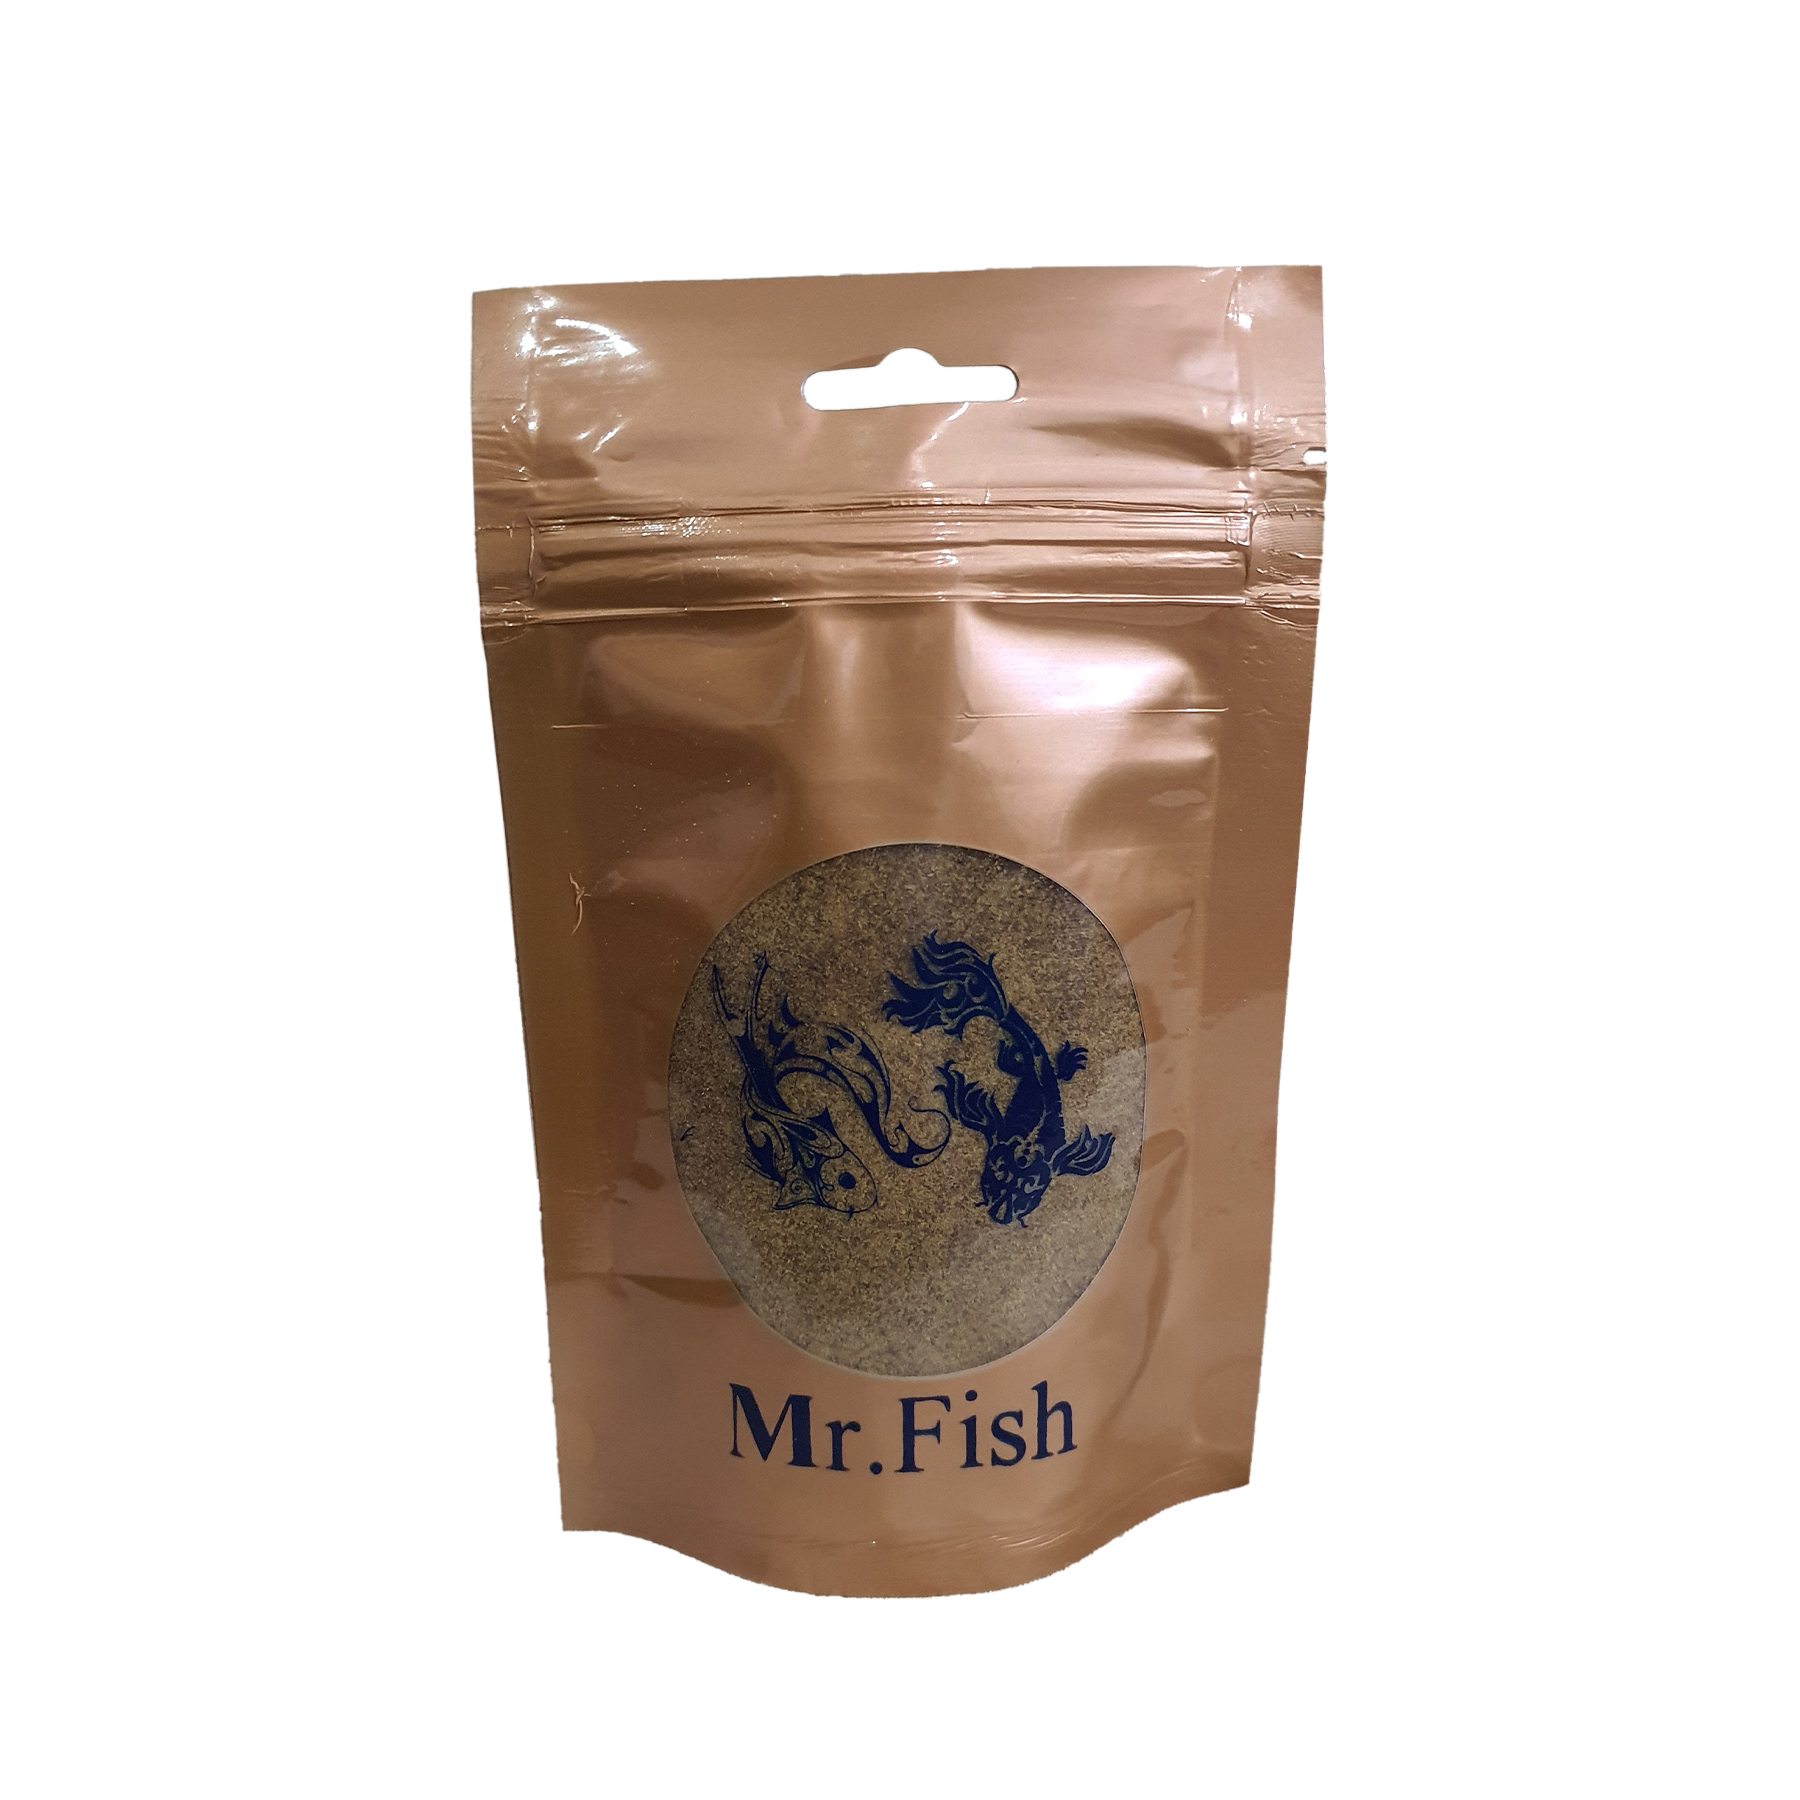  غذای ماهی مستر فیش مدل بیومار پودری وزن 100 گرم 